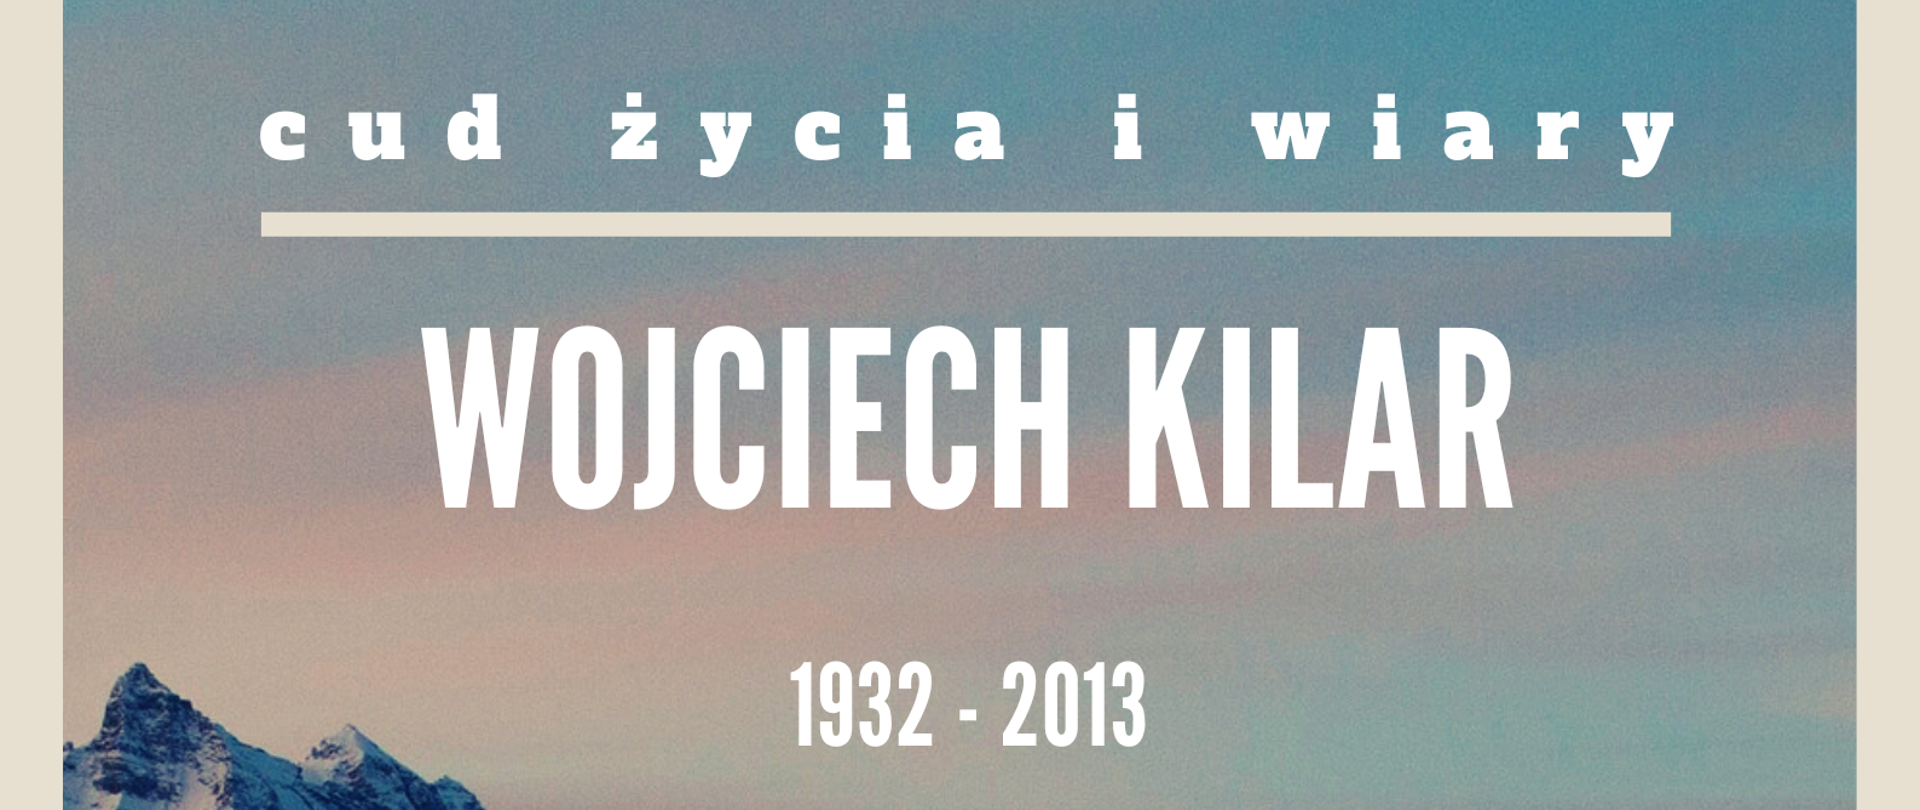 Na tle zdjęcia Tatr informacja o treści "cud życia i wiary, Wojciech Kilar - wspomnienie"